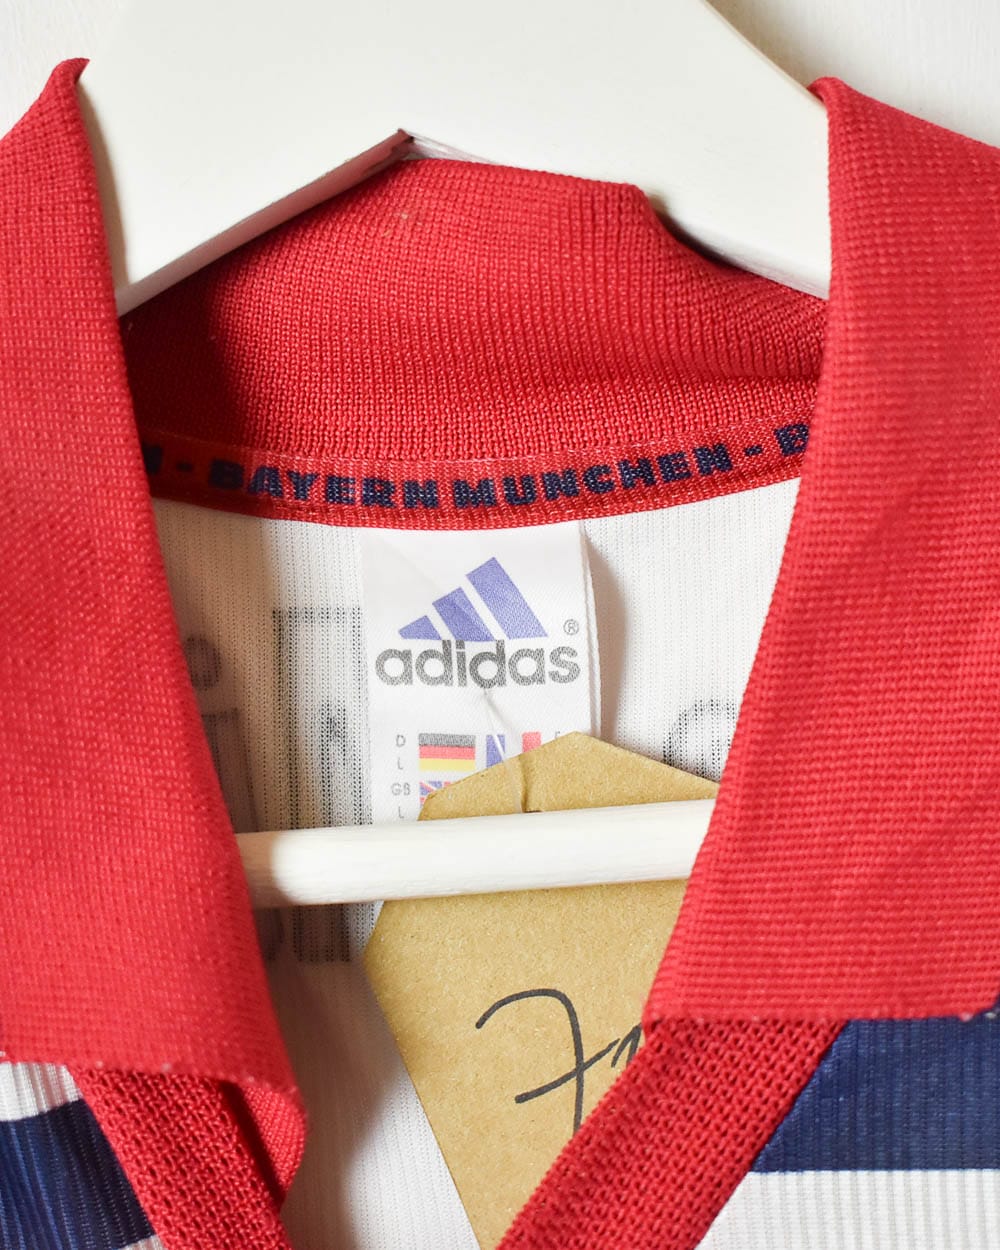 White Adidas Bayern Munich 1998/99 Away Shirt - Large